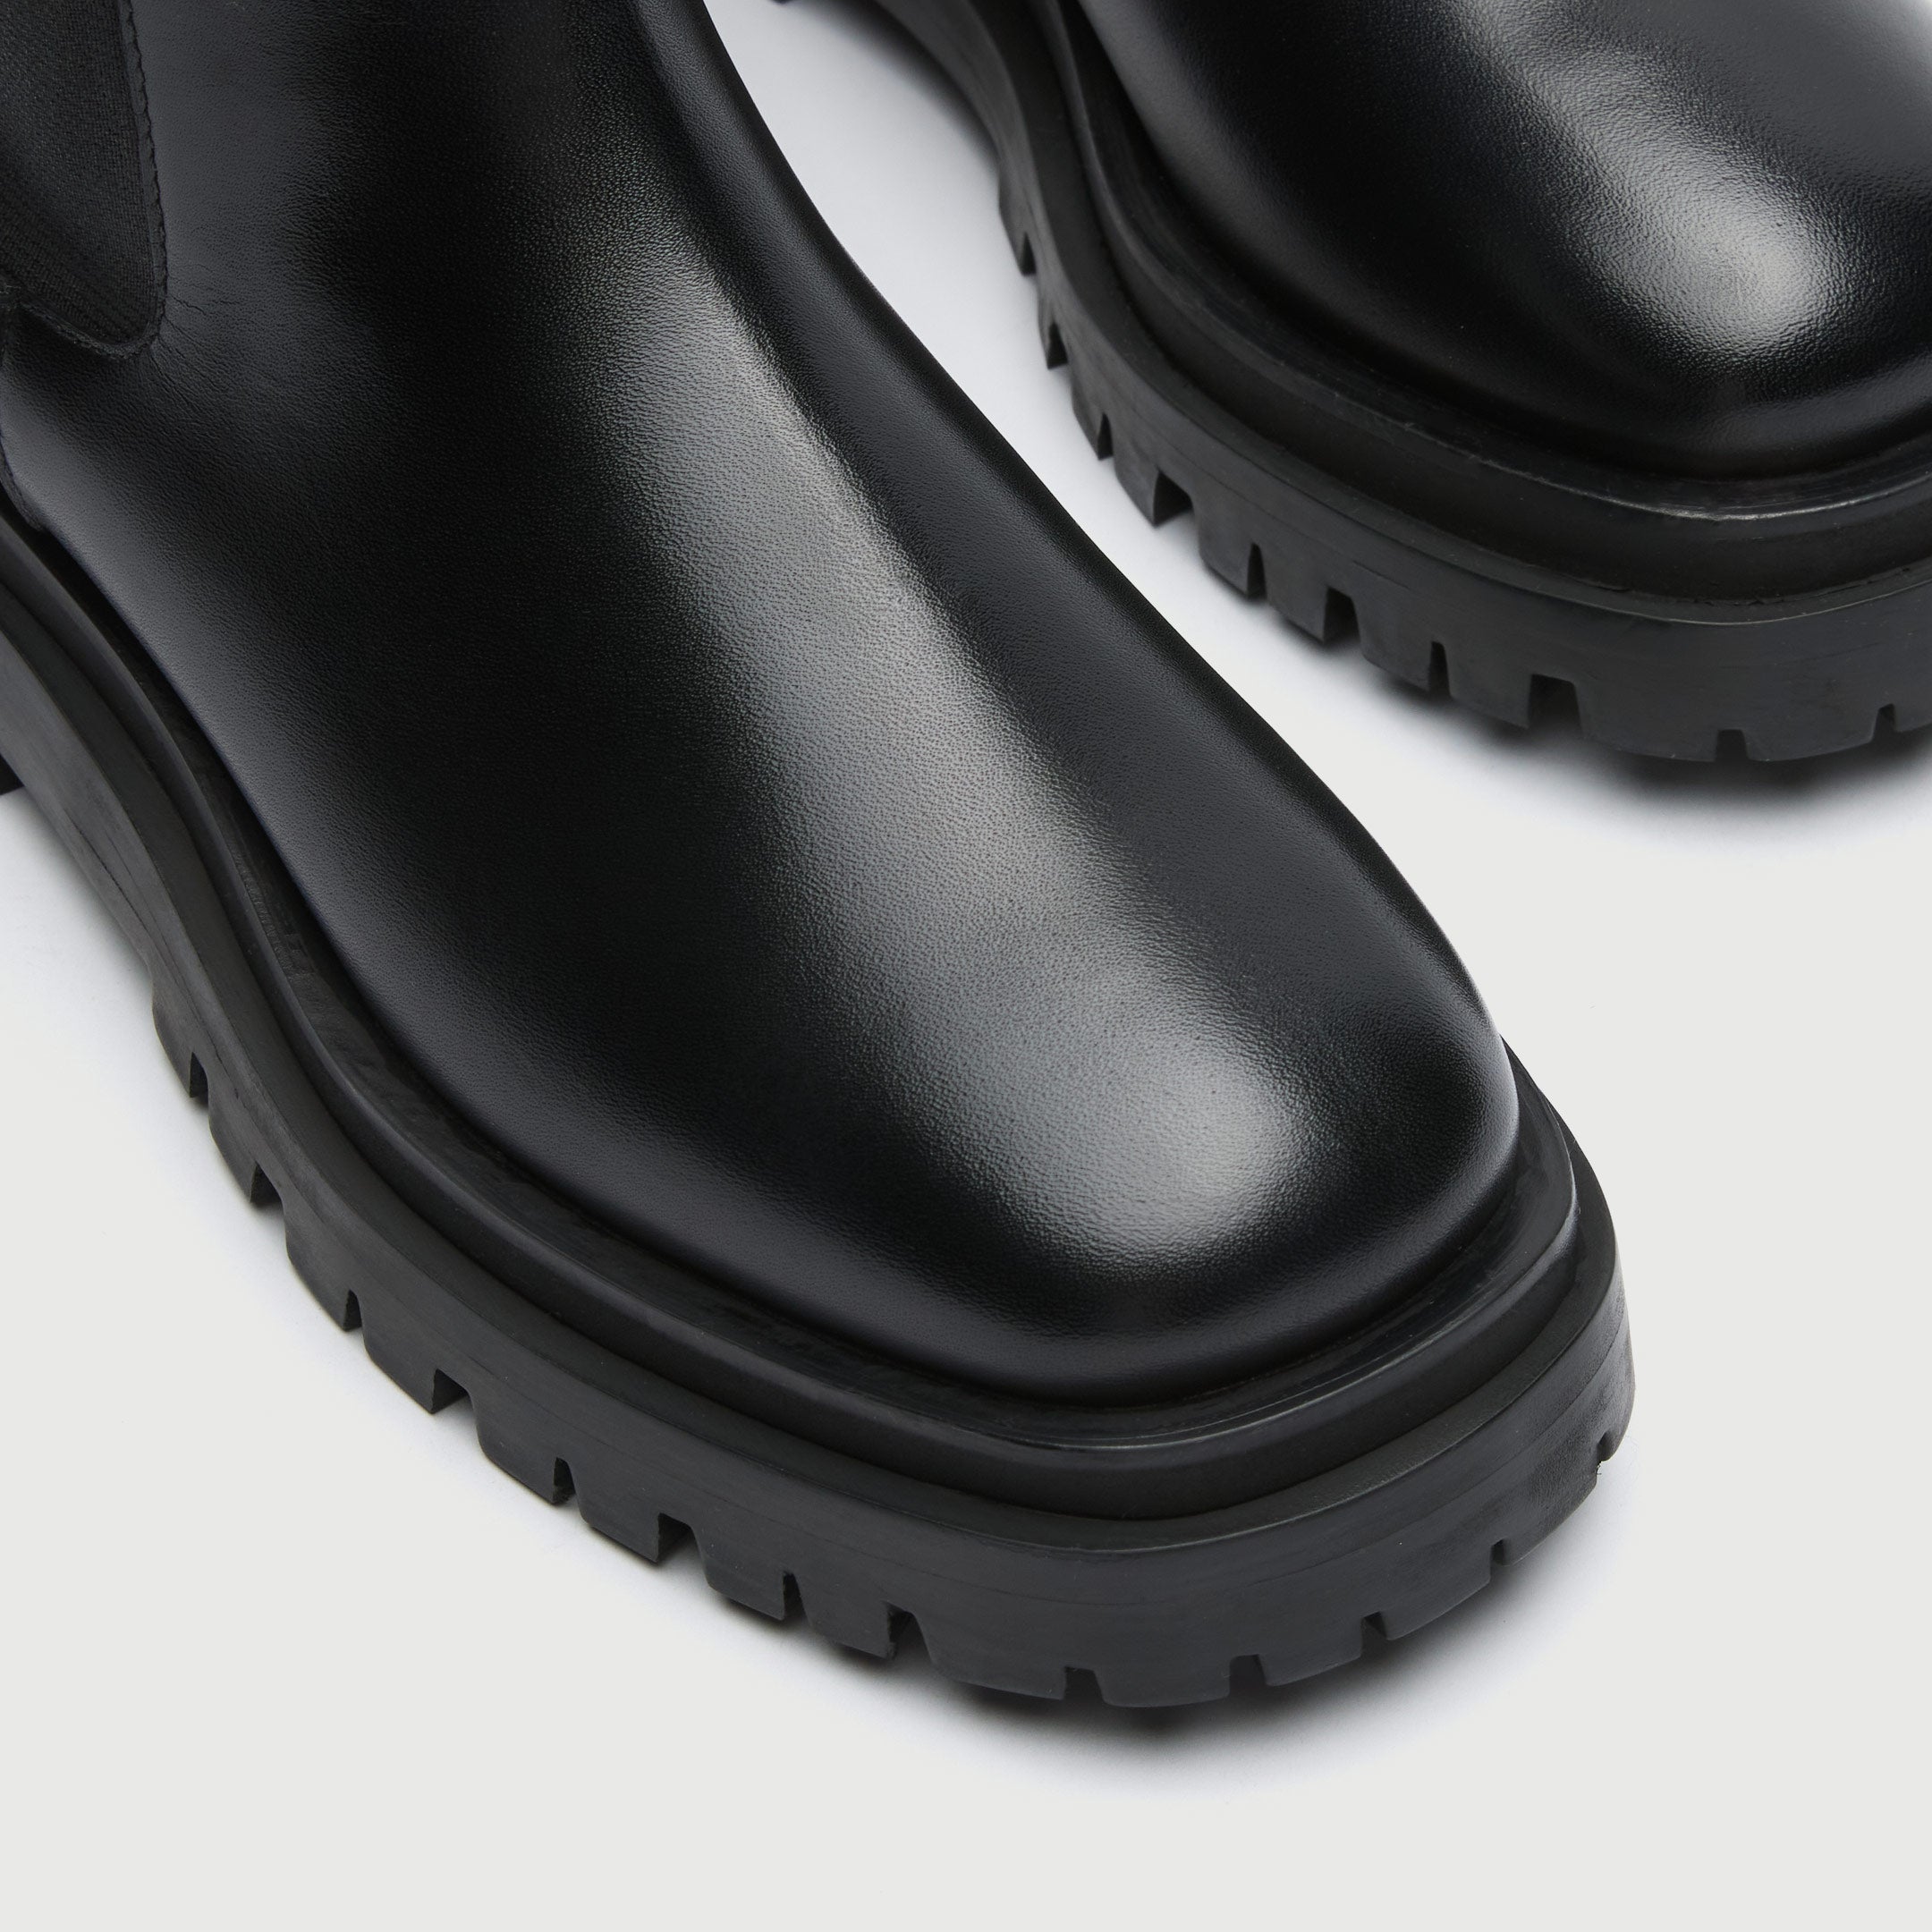 Walk London Women's Dana Tall Chelsea Boot in Black Leather